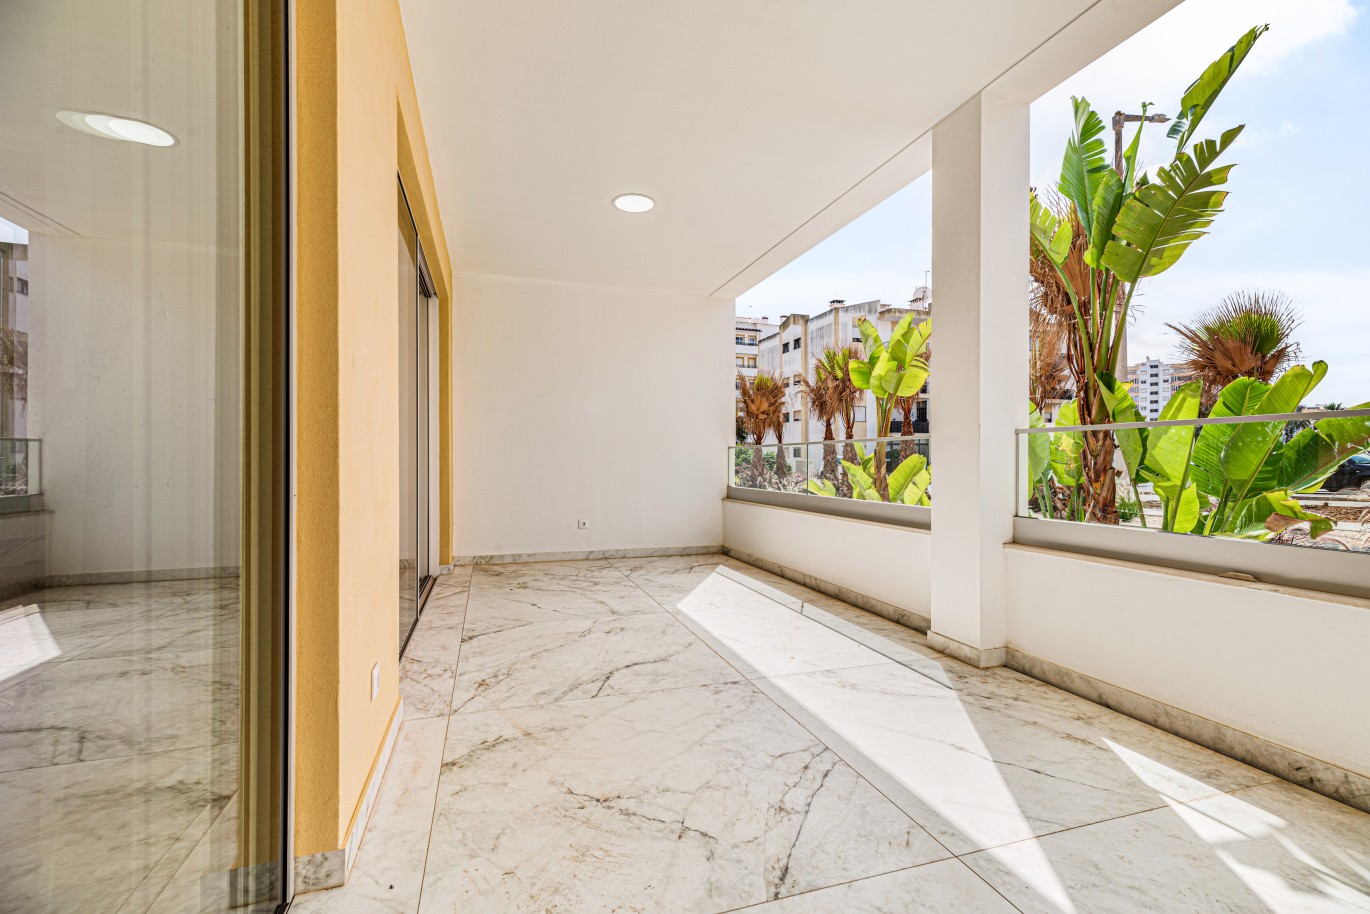 Apartamento, com terraço, para venda, em Lagos, Algarve_238086